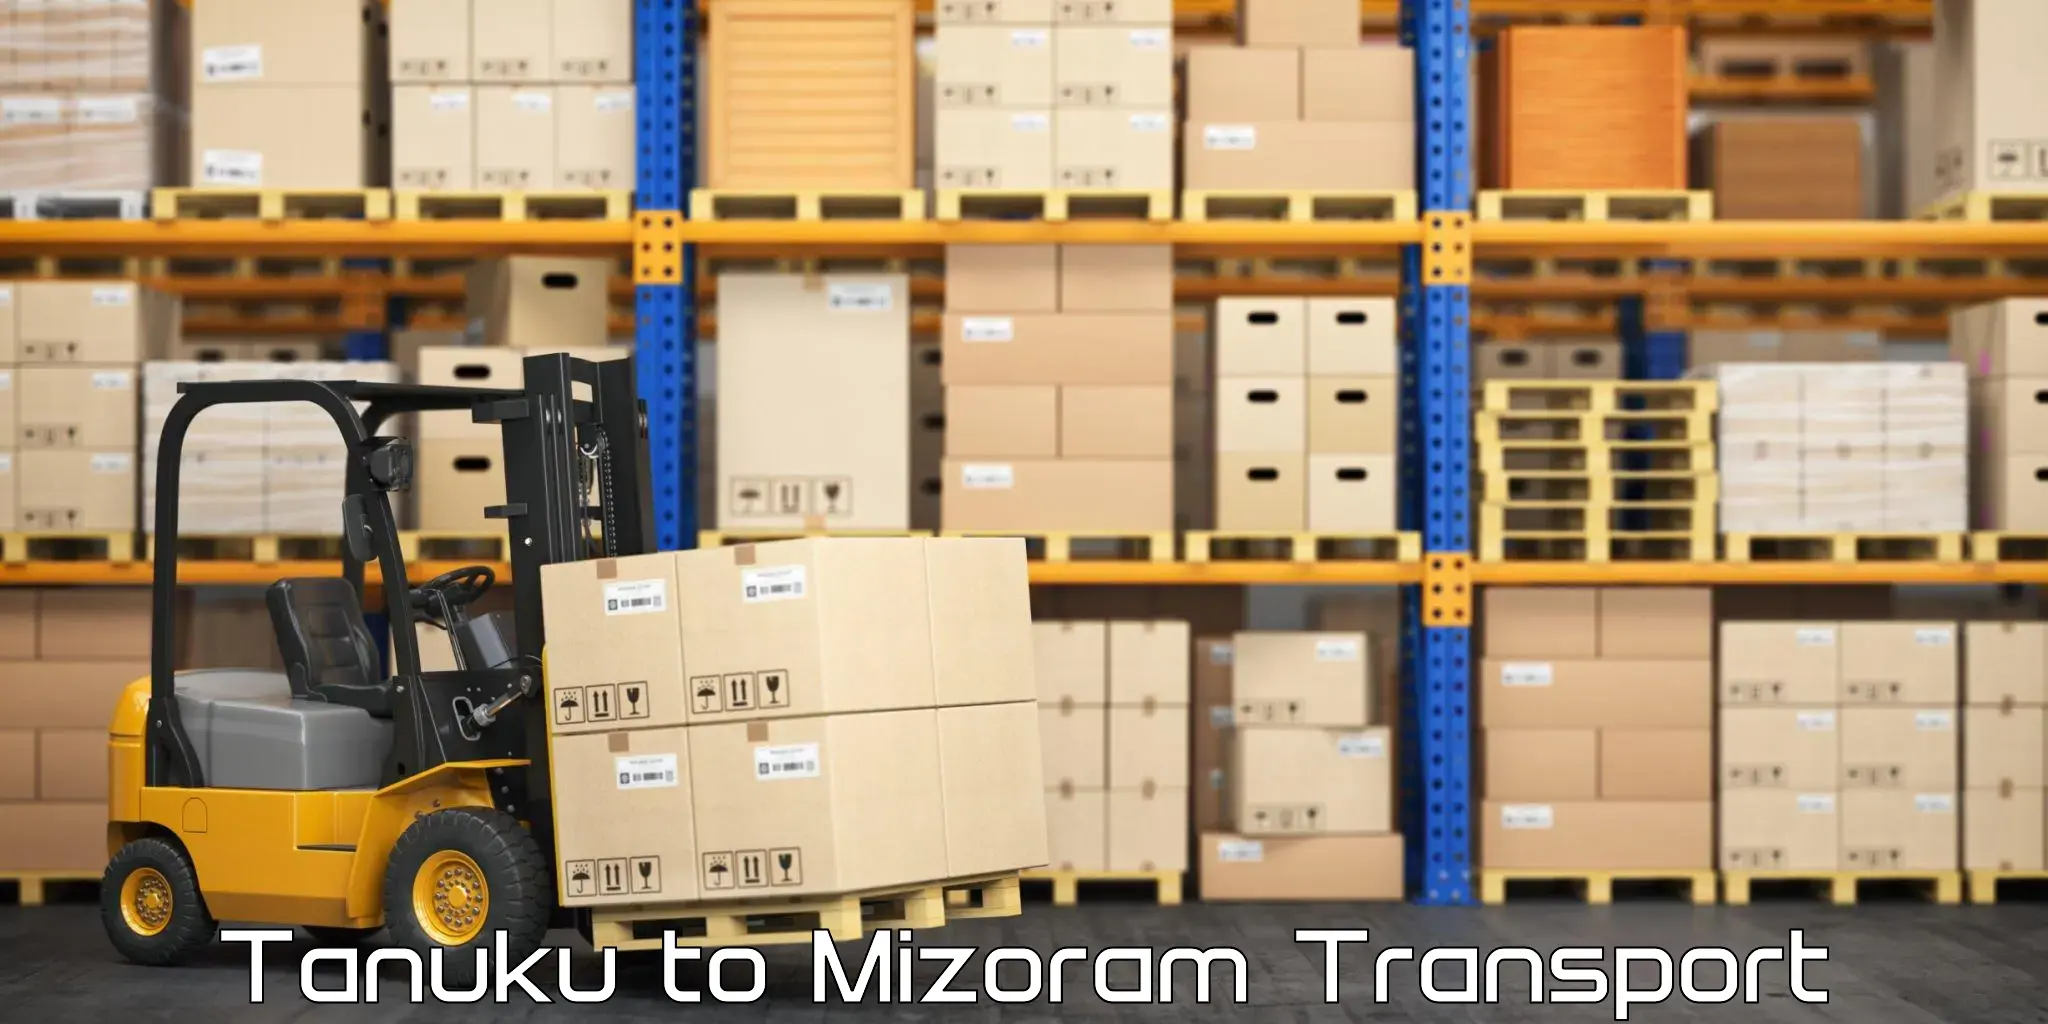 Nationwide transport services Tanuku to Mizoram